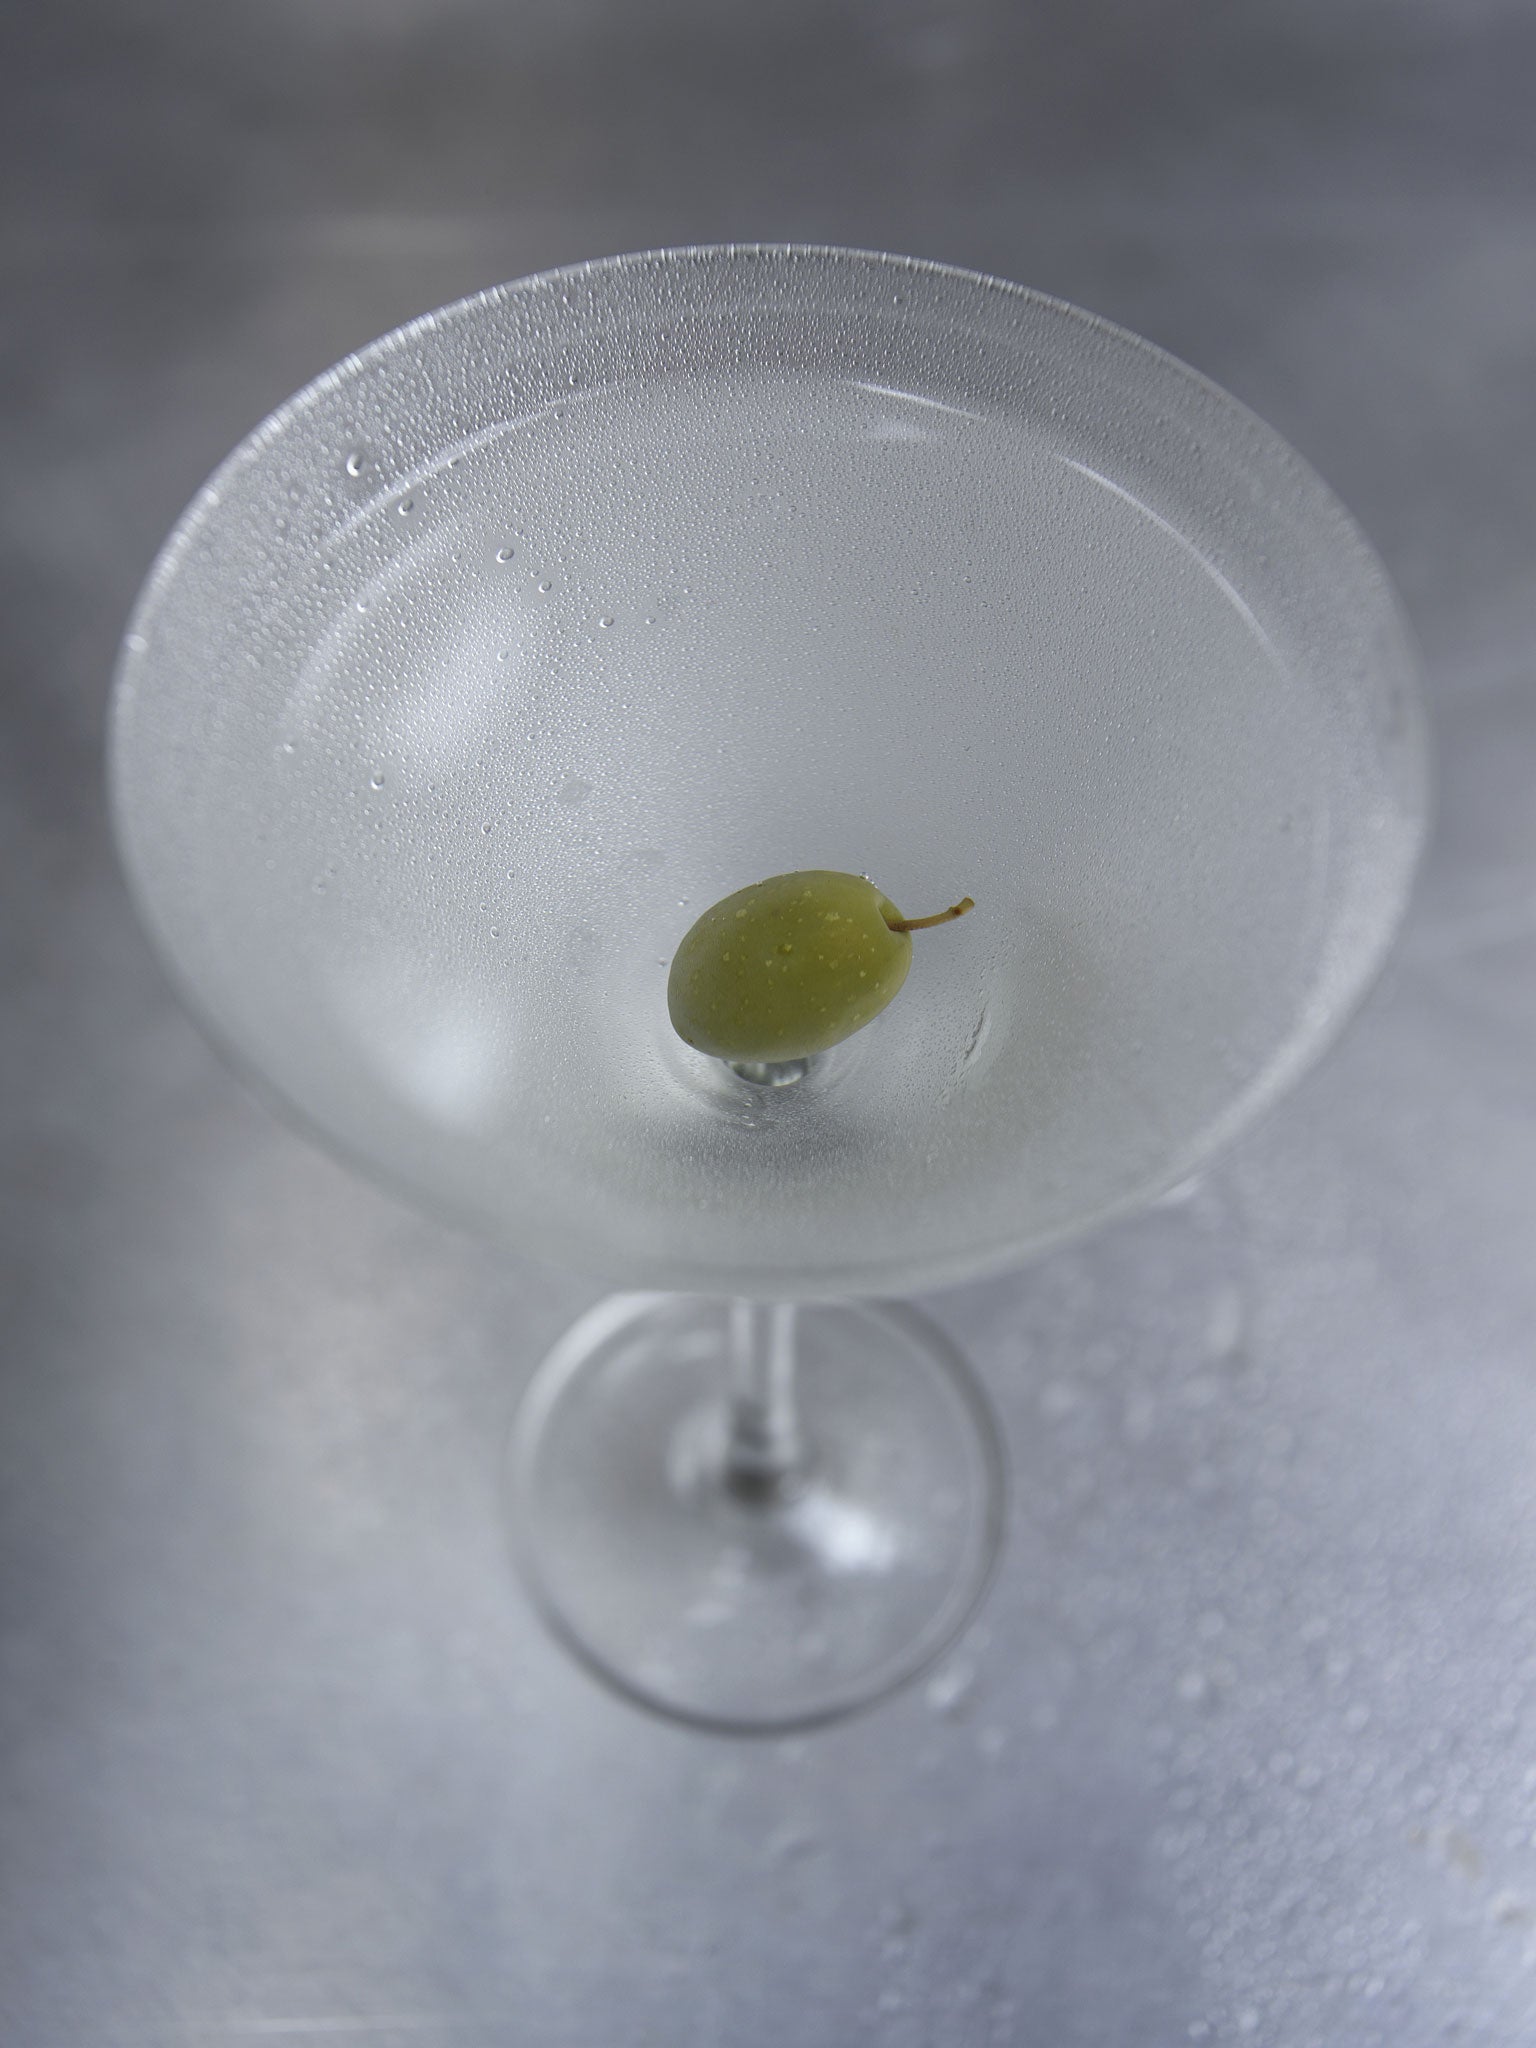 Shaken, not stirred: a pre-dinner martini